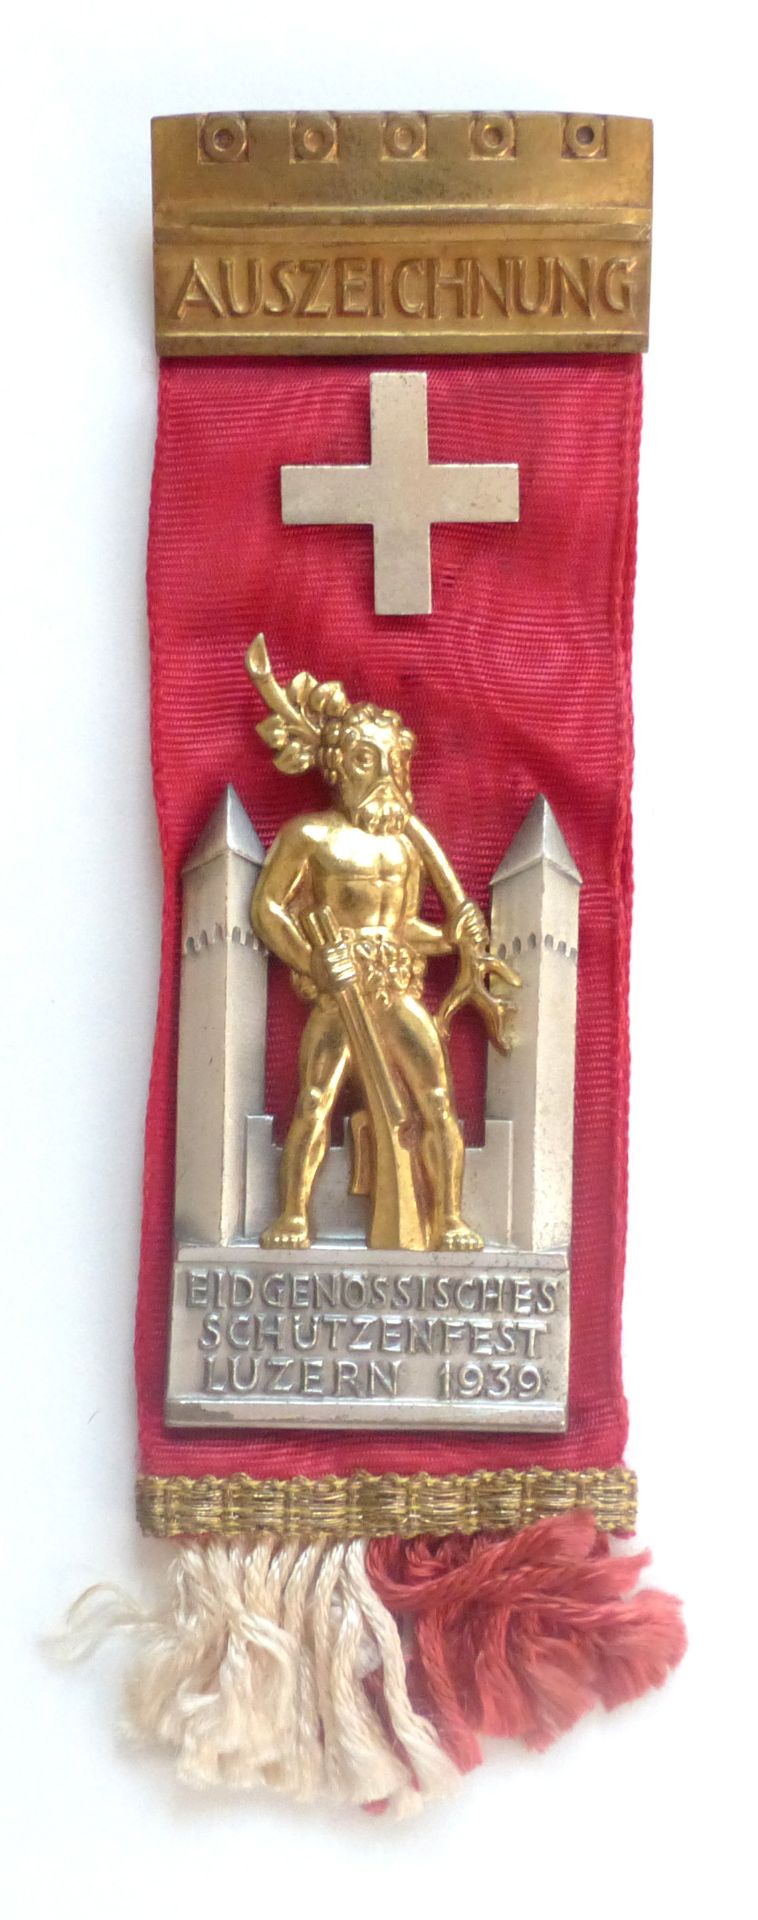 Eidgenössische Schützenfest Luzern 1939 Auszeichnung